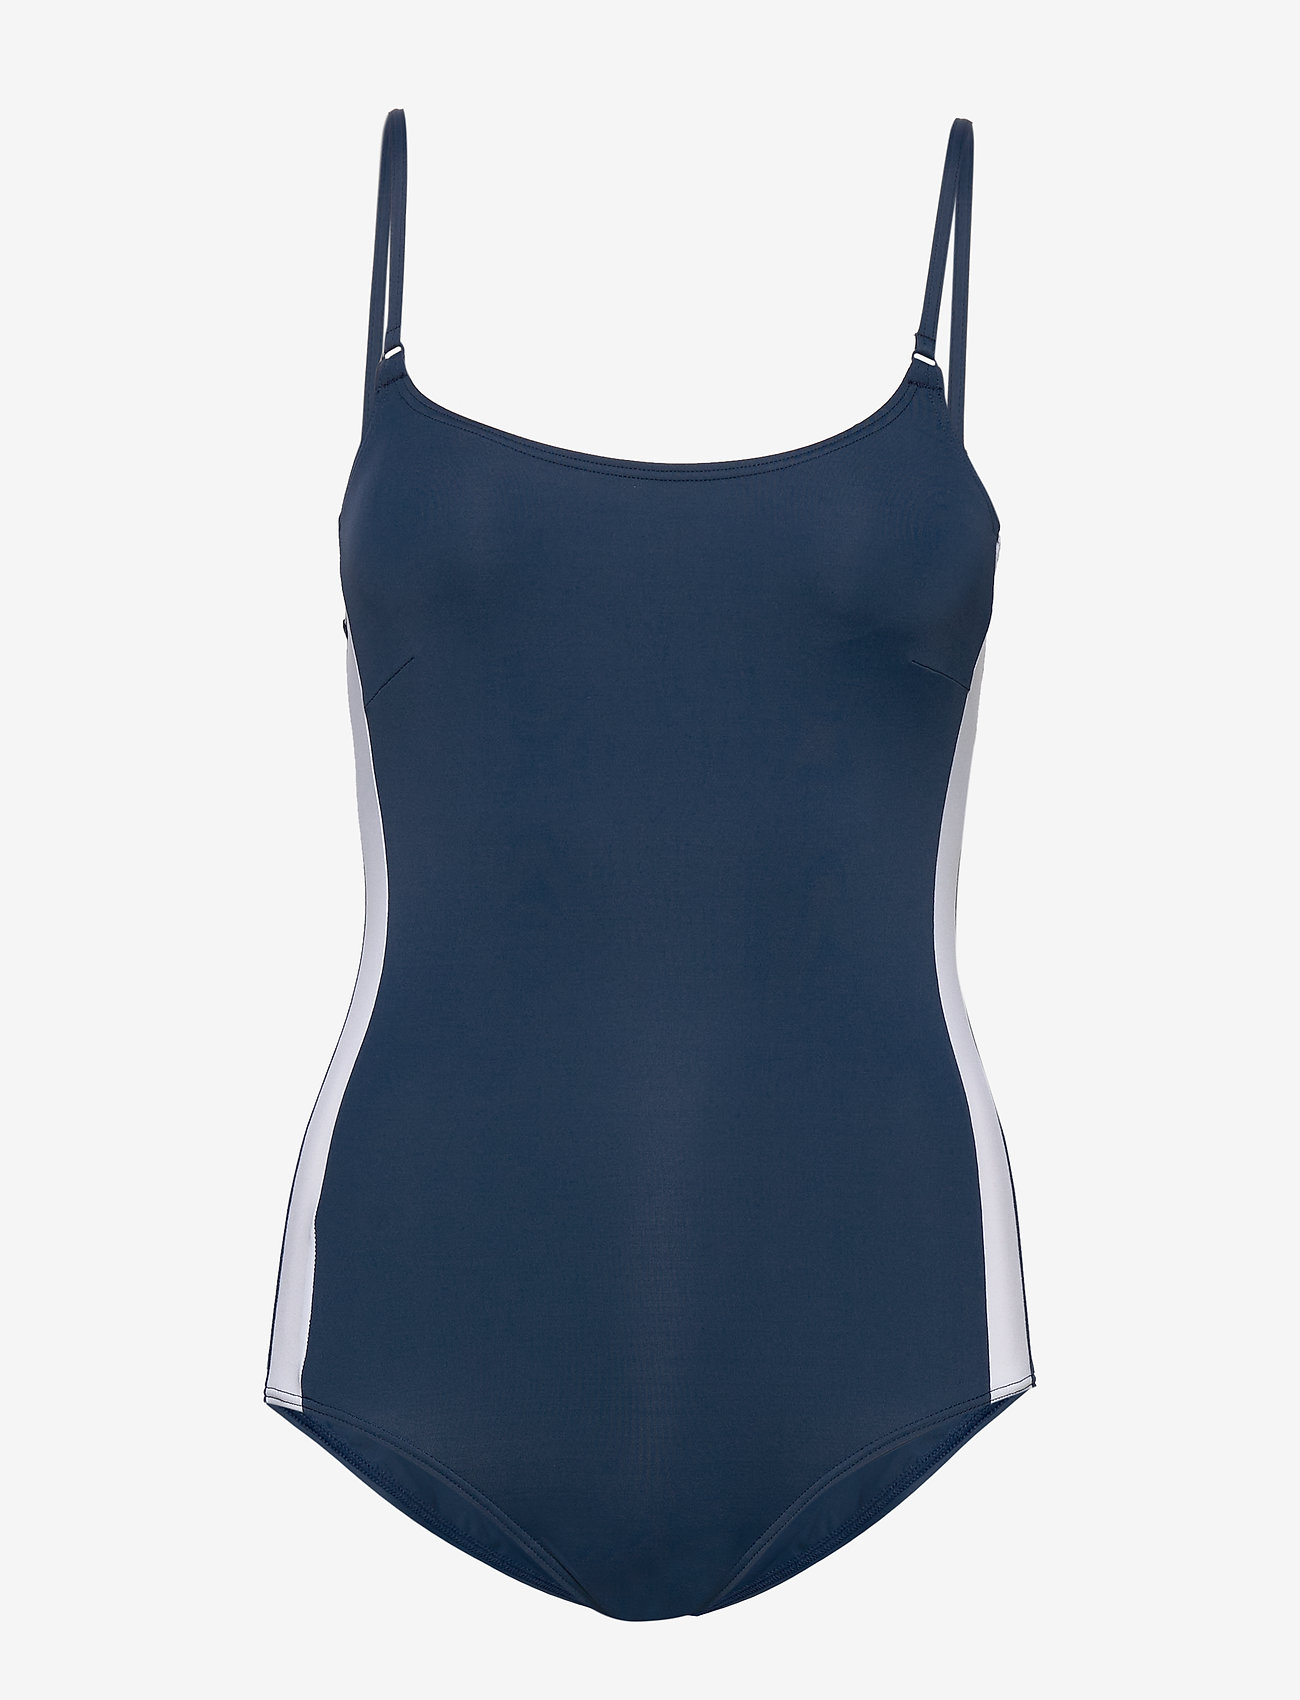 Esprit Bodywear Women - Swimsuit with concealed underwiring - moterims - dark blue - 0